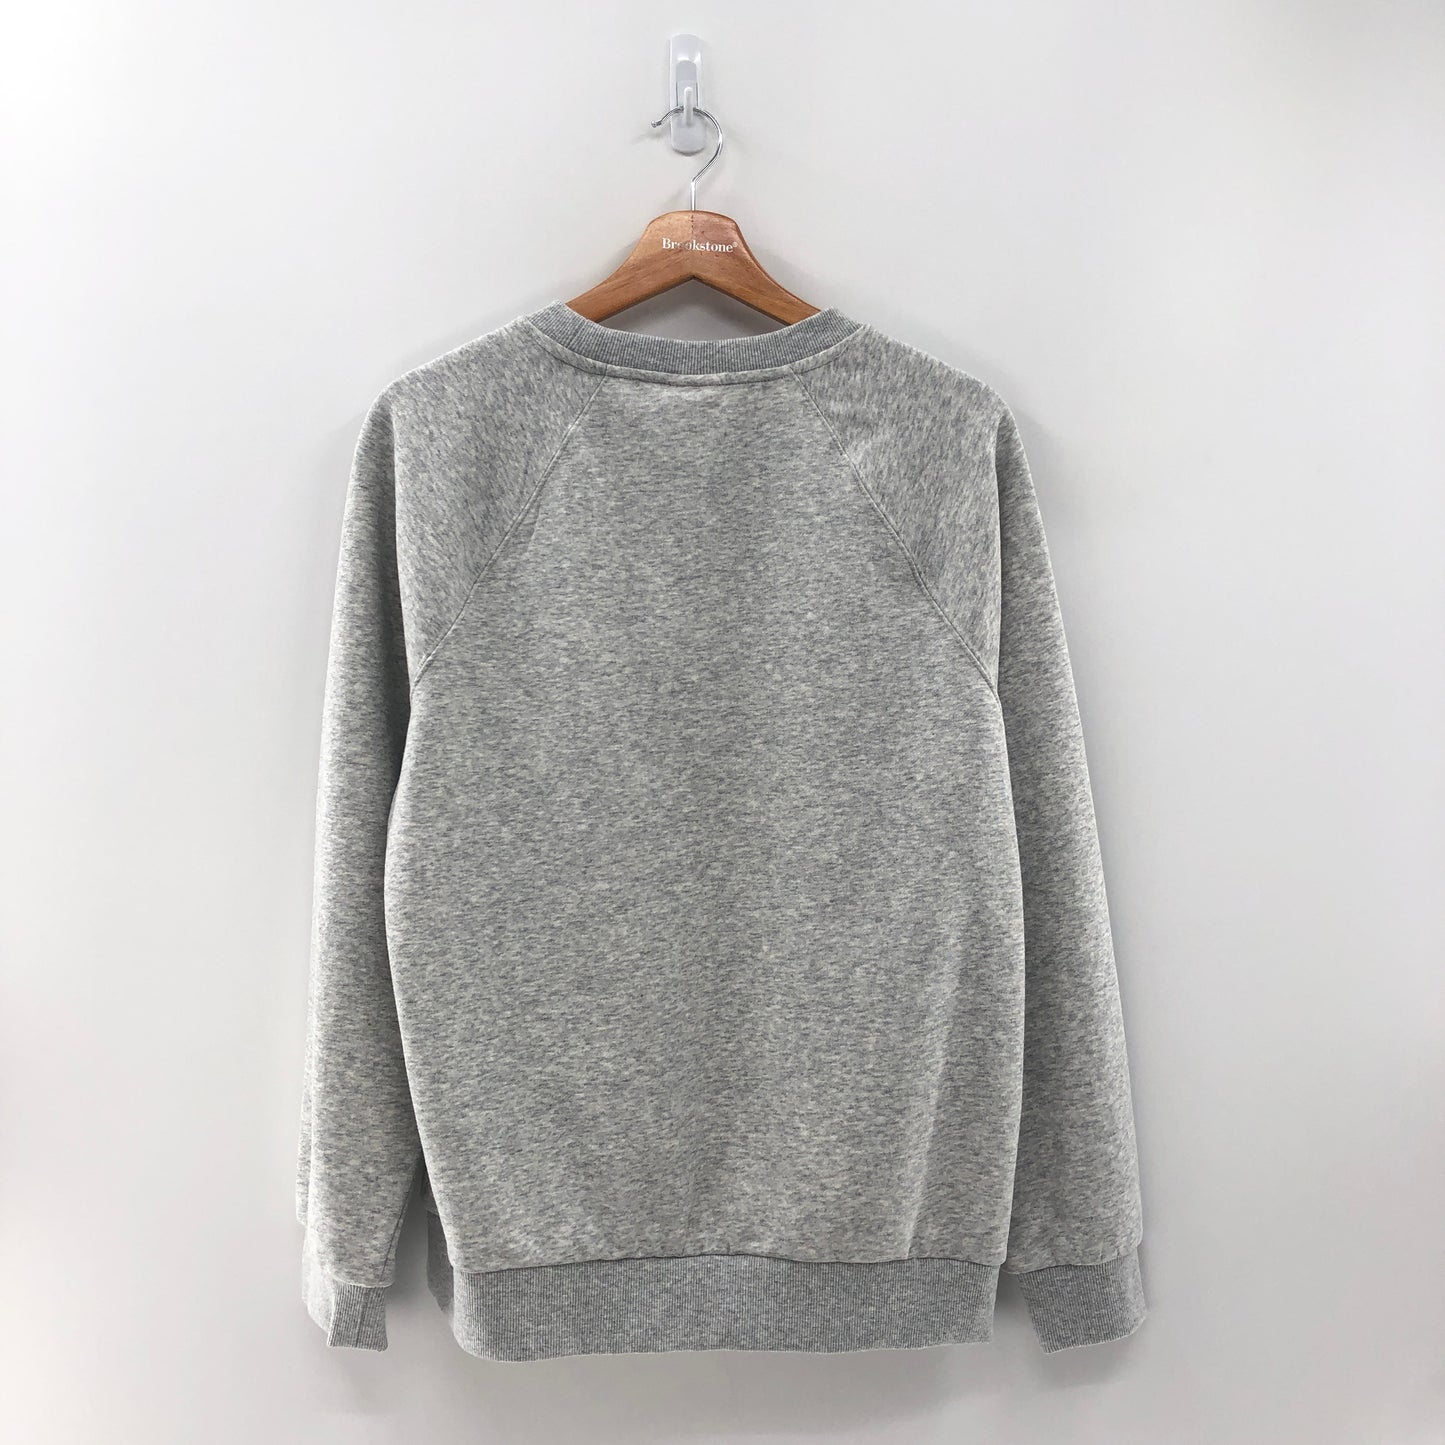 Stoney Clover Lane + Target  Grey Sweatshirt M